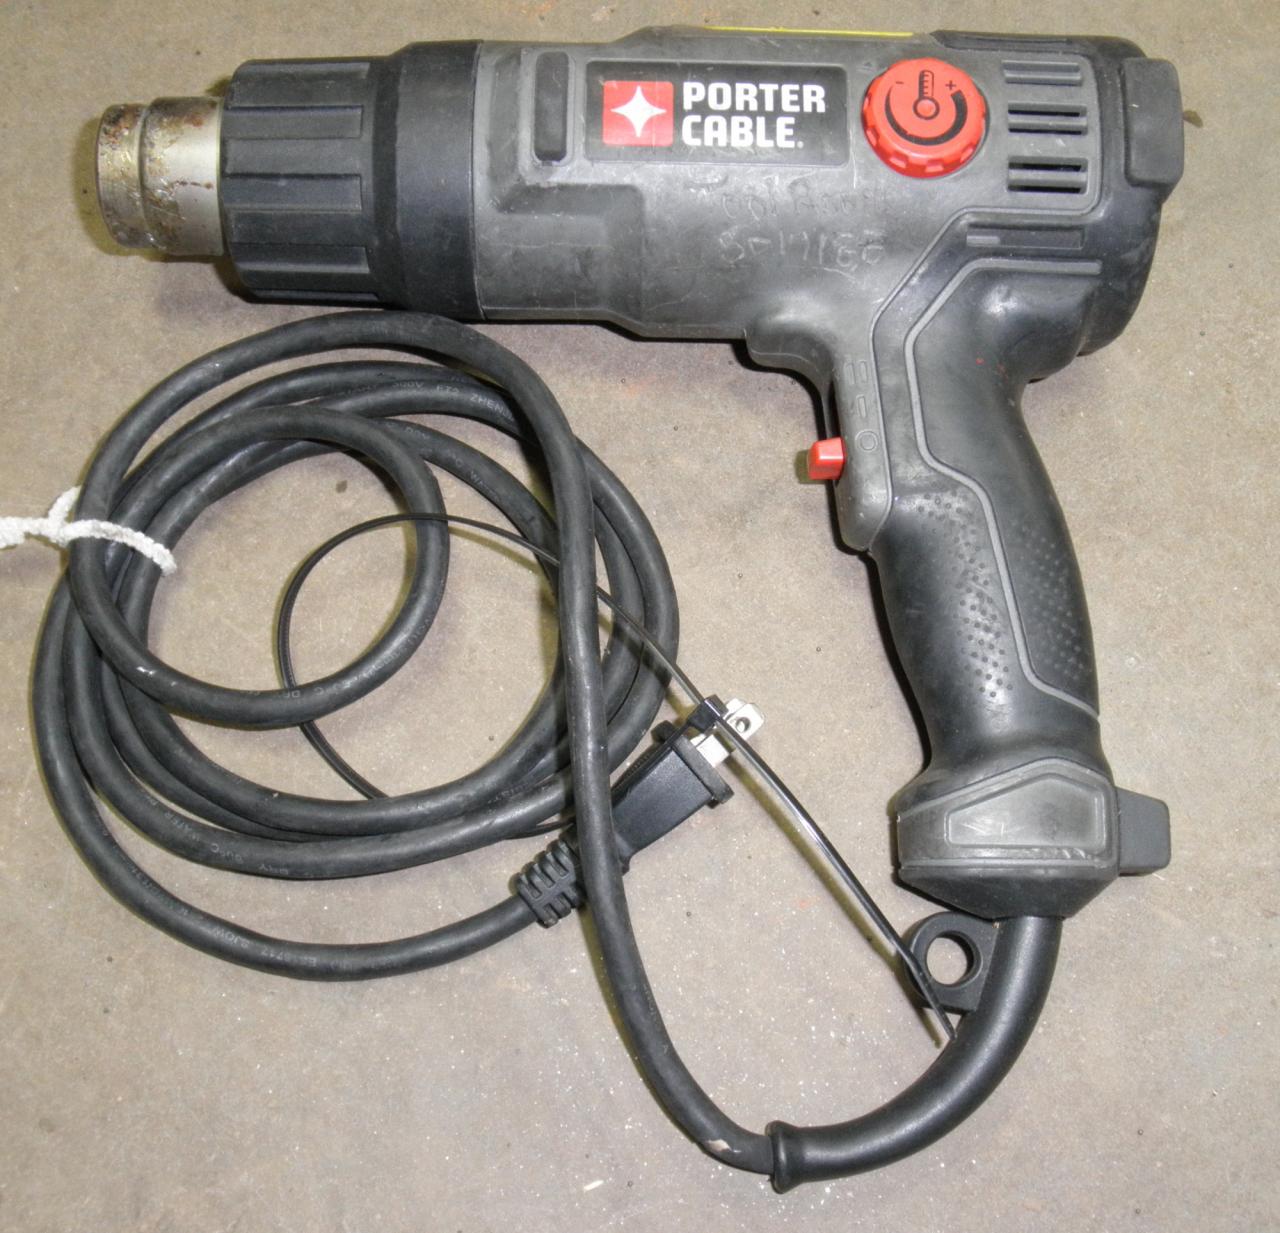 PORTER CABLE 1500 Watt Heat Gun PC1500HG Tools & Workshop Equipment Power  Tools